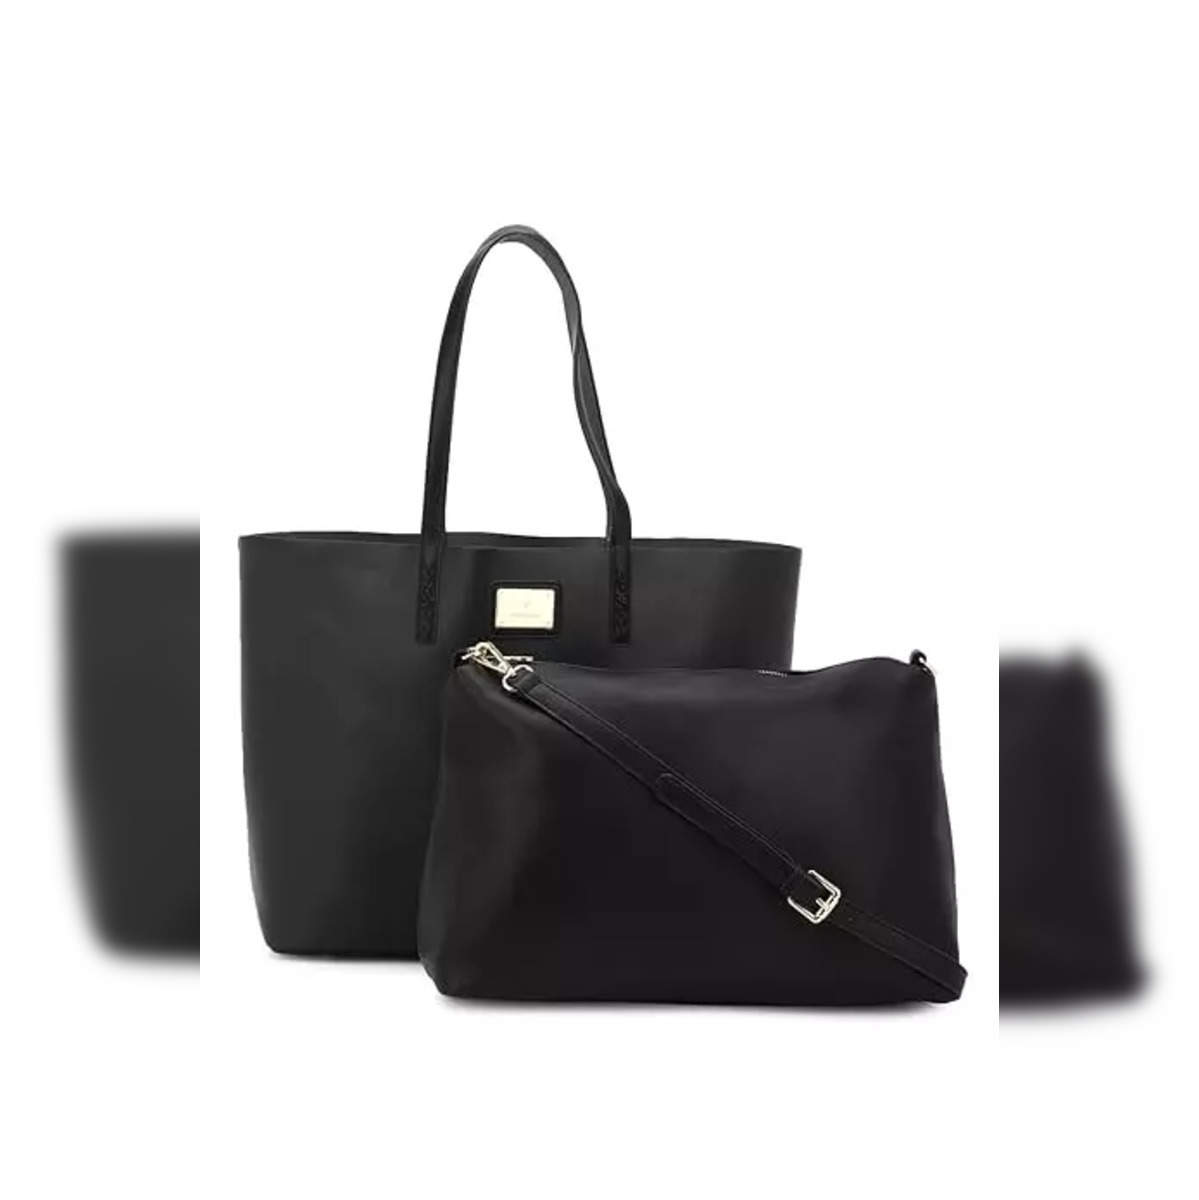 APT 9 Glazed Black Leather Shoulder Bag Satchel Purse | eBay